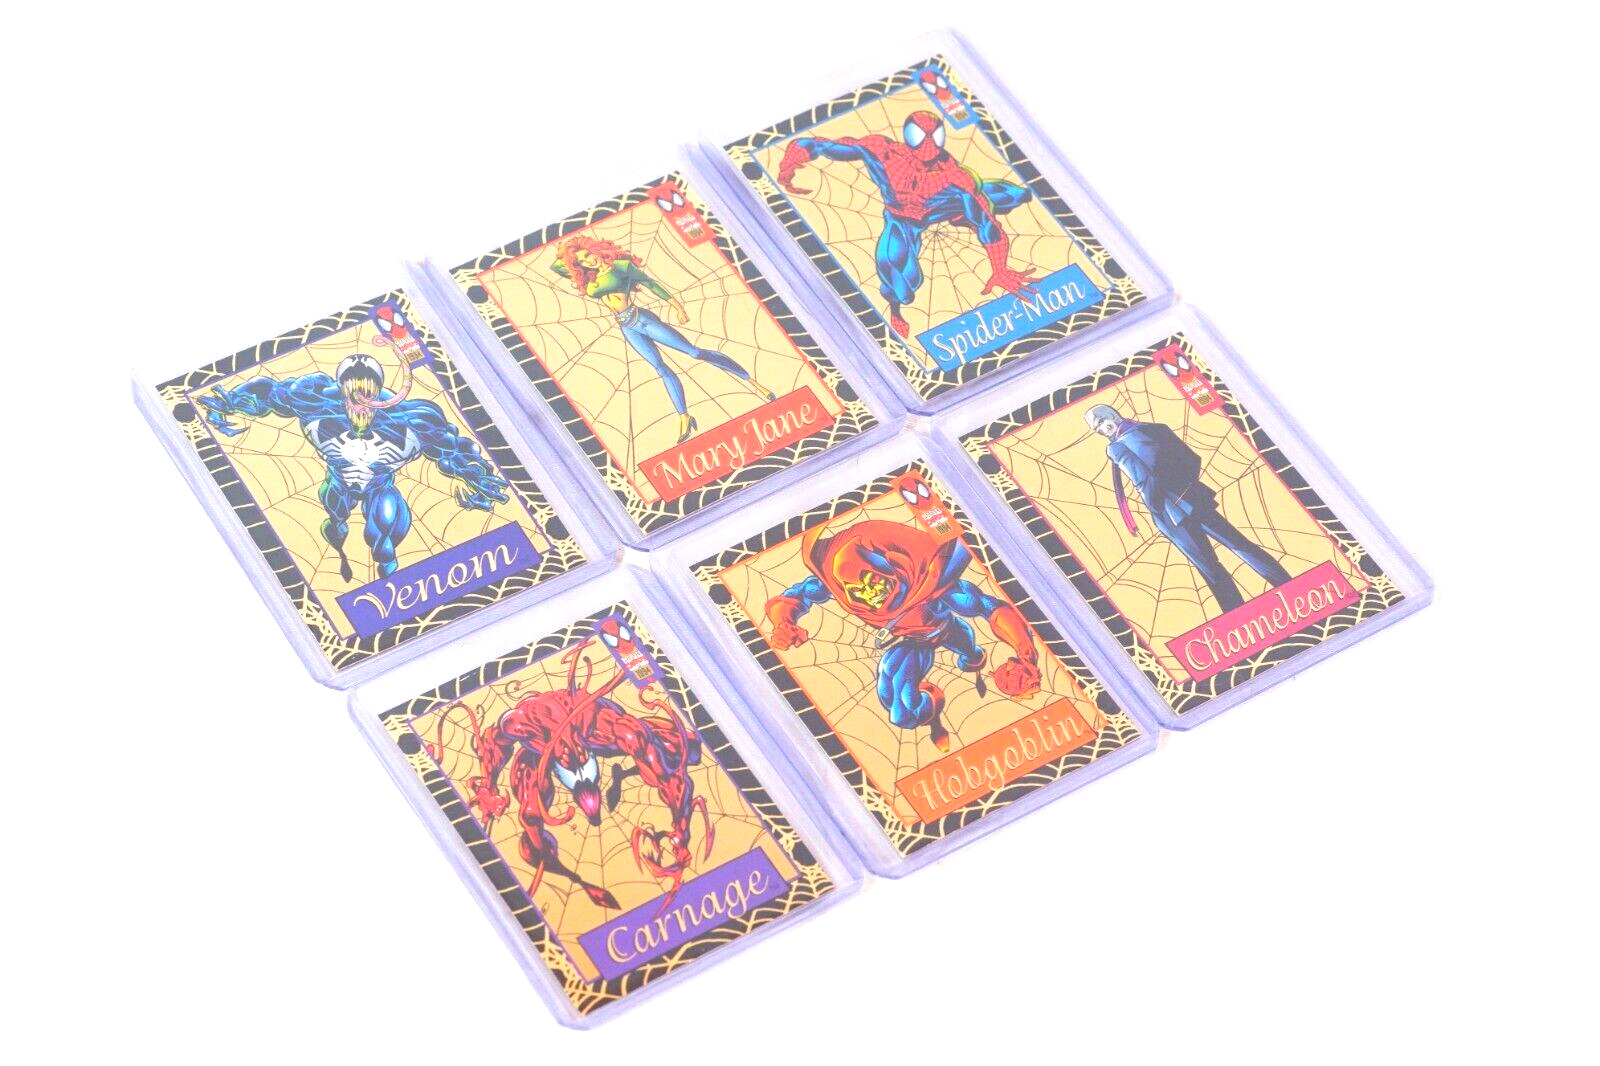 1994 MARVEL Gold Web Fleer Trading Card Set Limited Edition Foil Cards 1-6